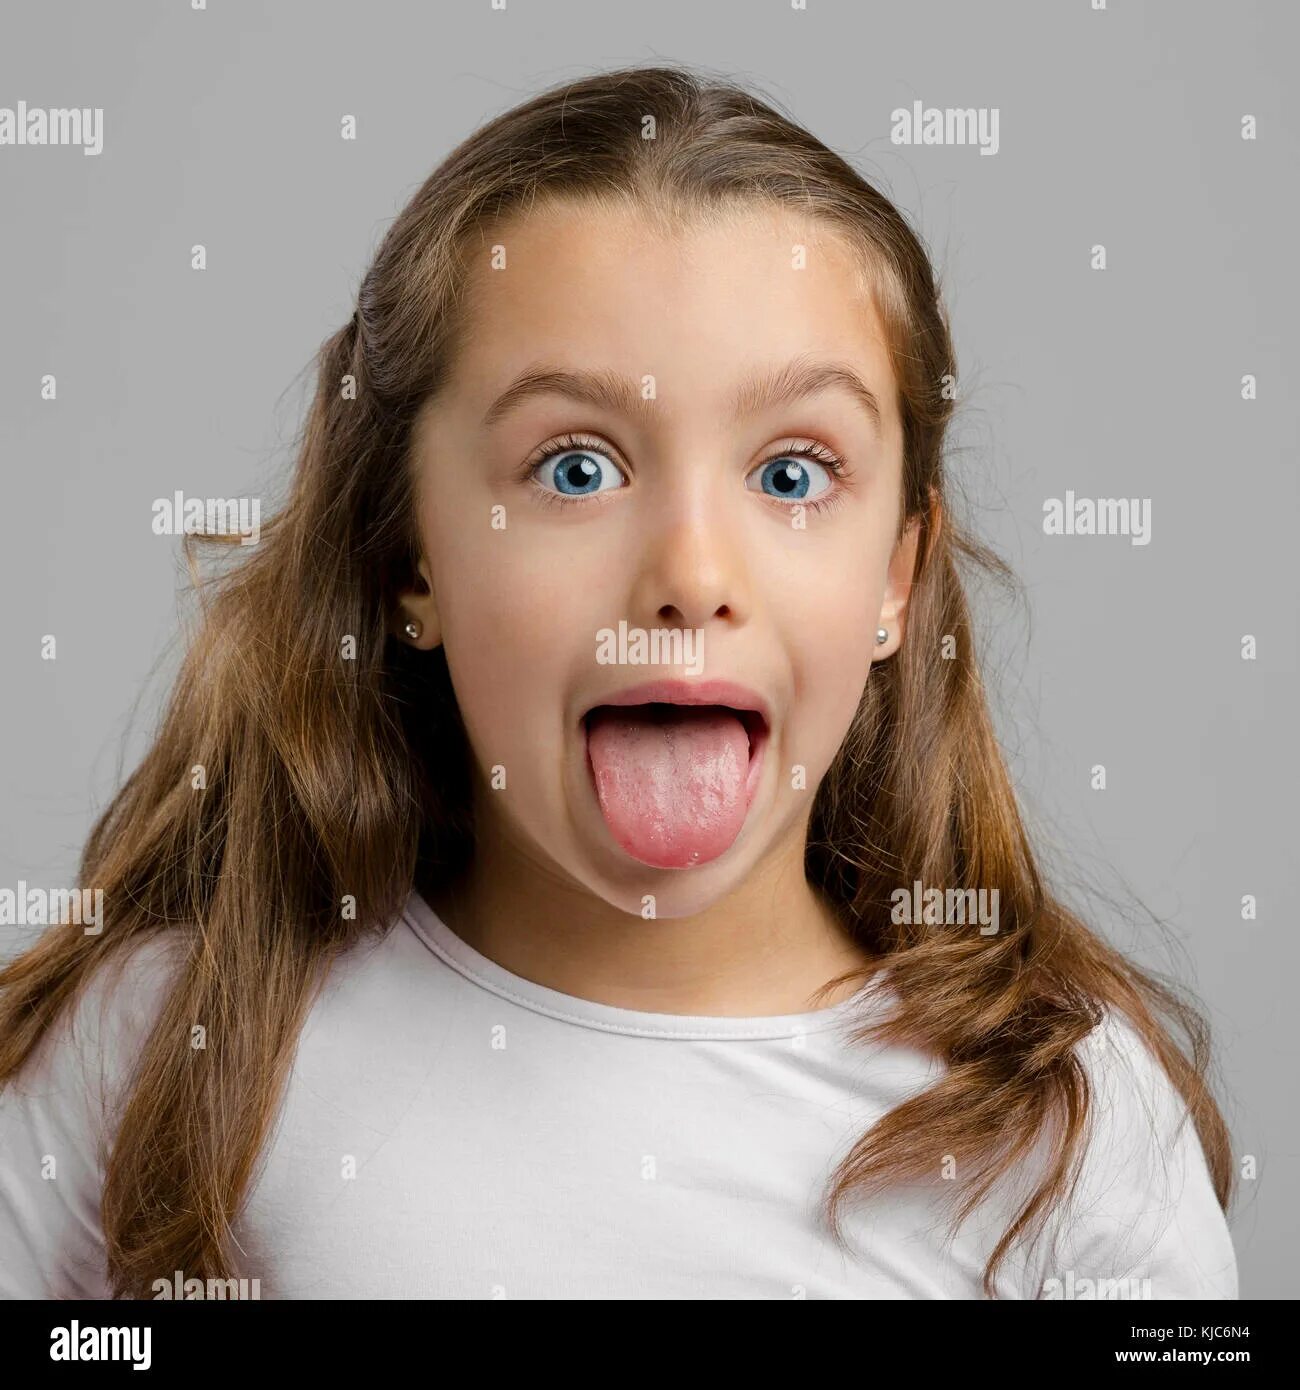 Язык молодой. Маленькая девочка с высунутым языком. Детское лицо с открытым ртом. Подросток с высунутым языком. Подросток с открытым ртом.